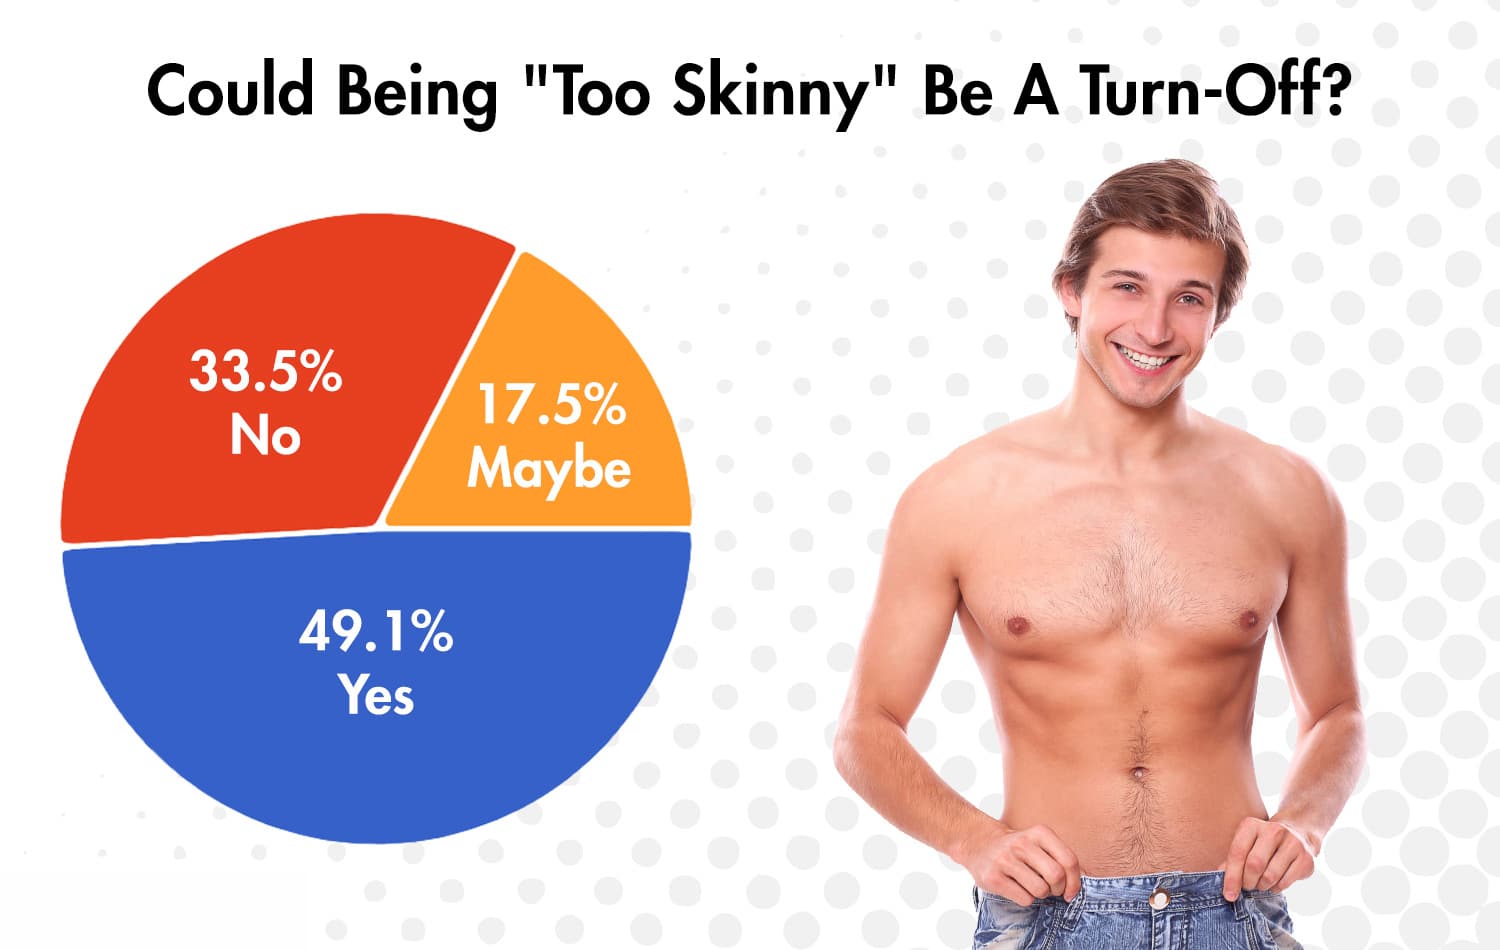 Girls love skinny guys